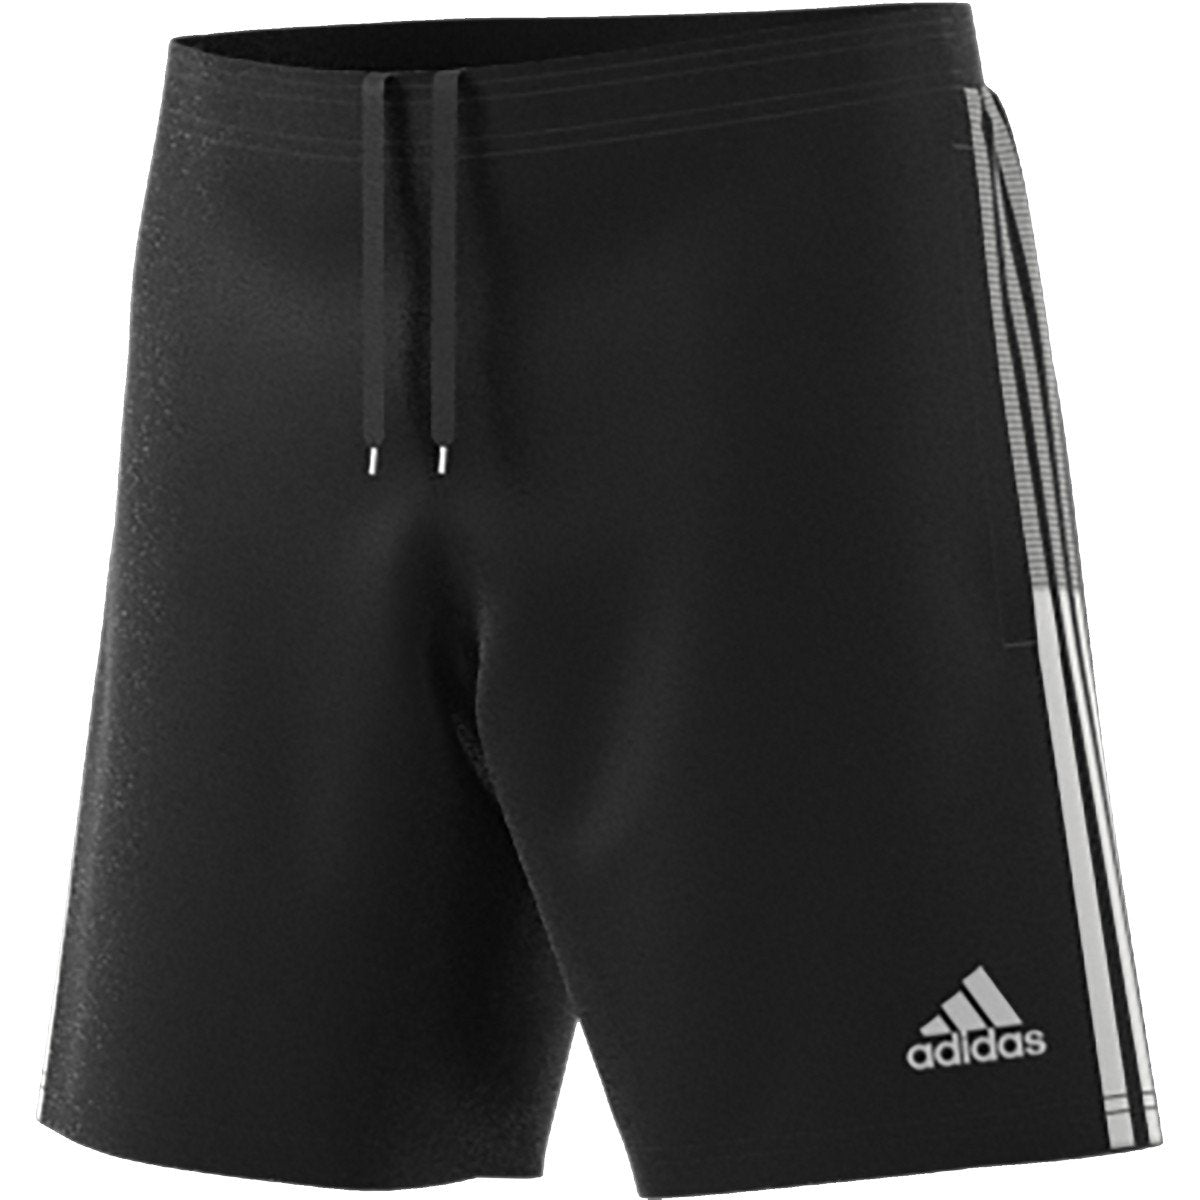 adidas Men's Tiro 21 Training Shorts | GN2157 Shorts Adidas Adult Small Black 